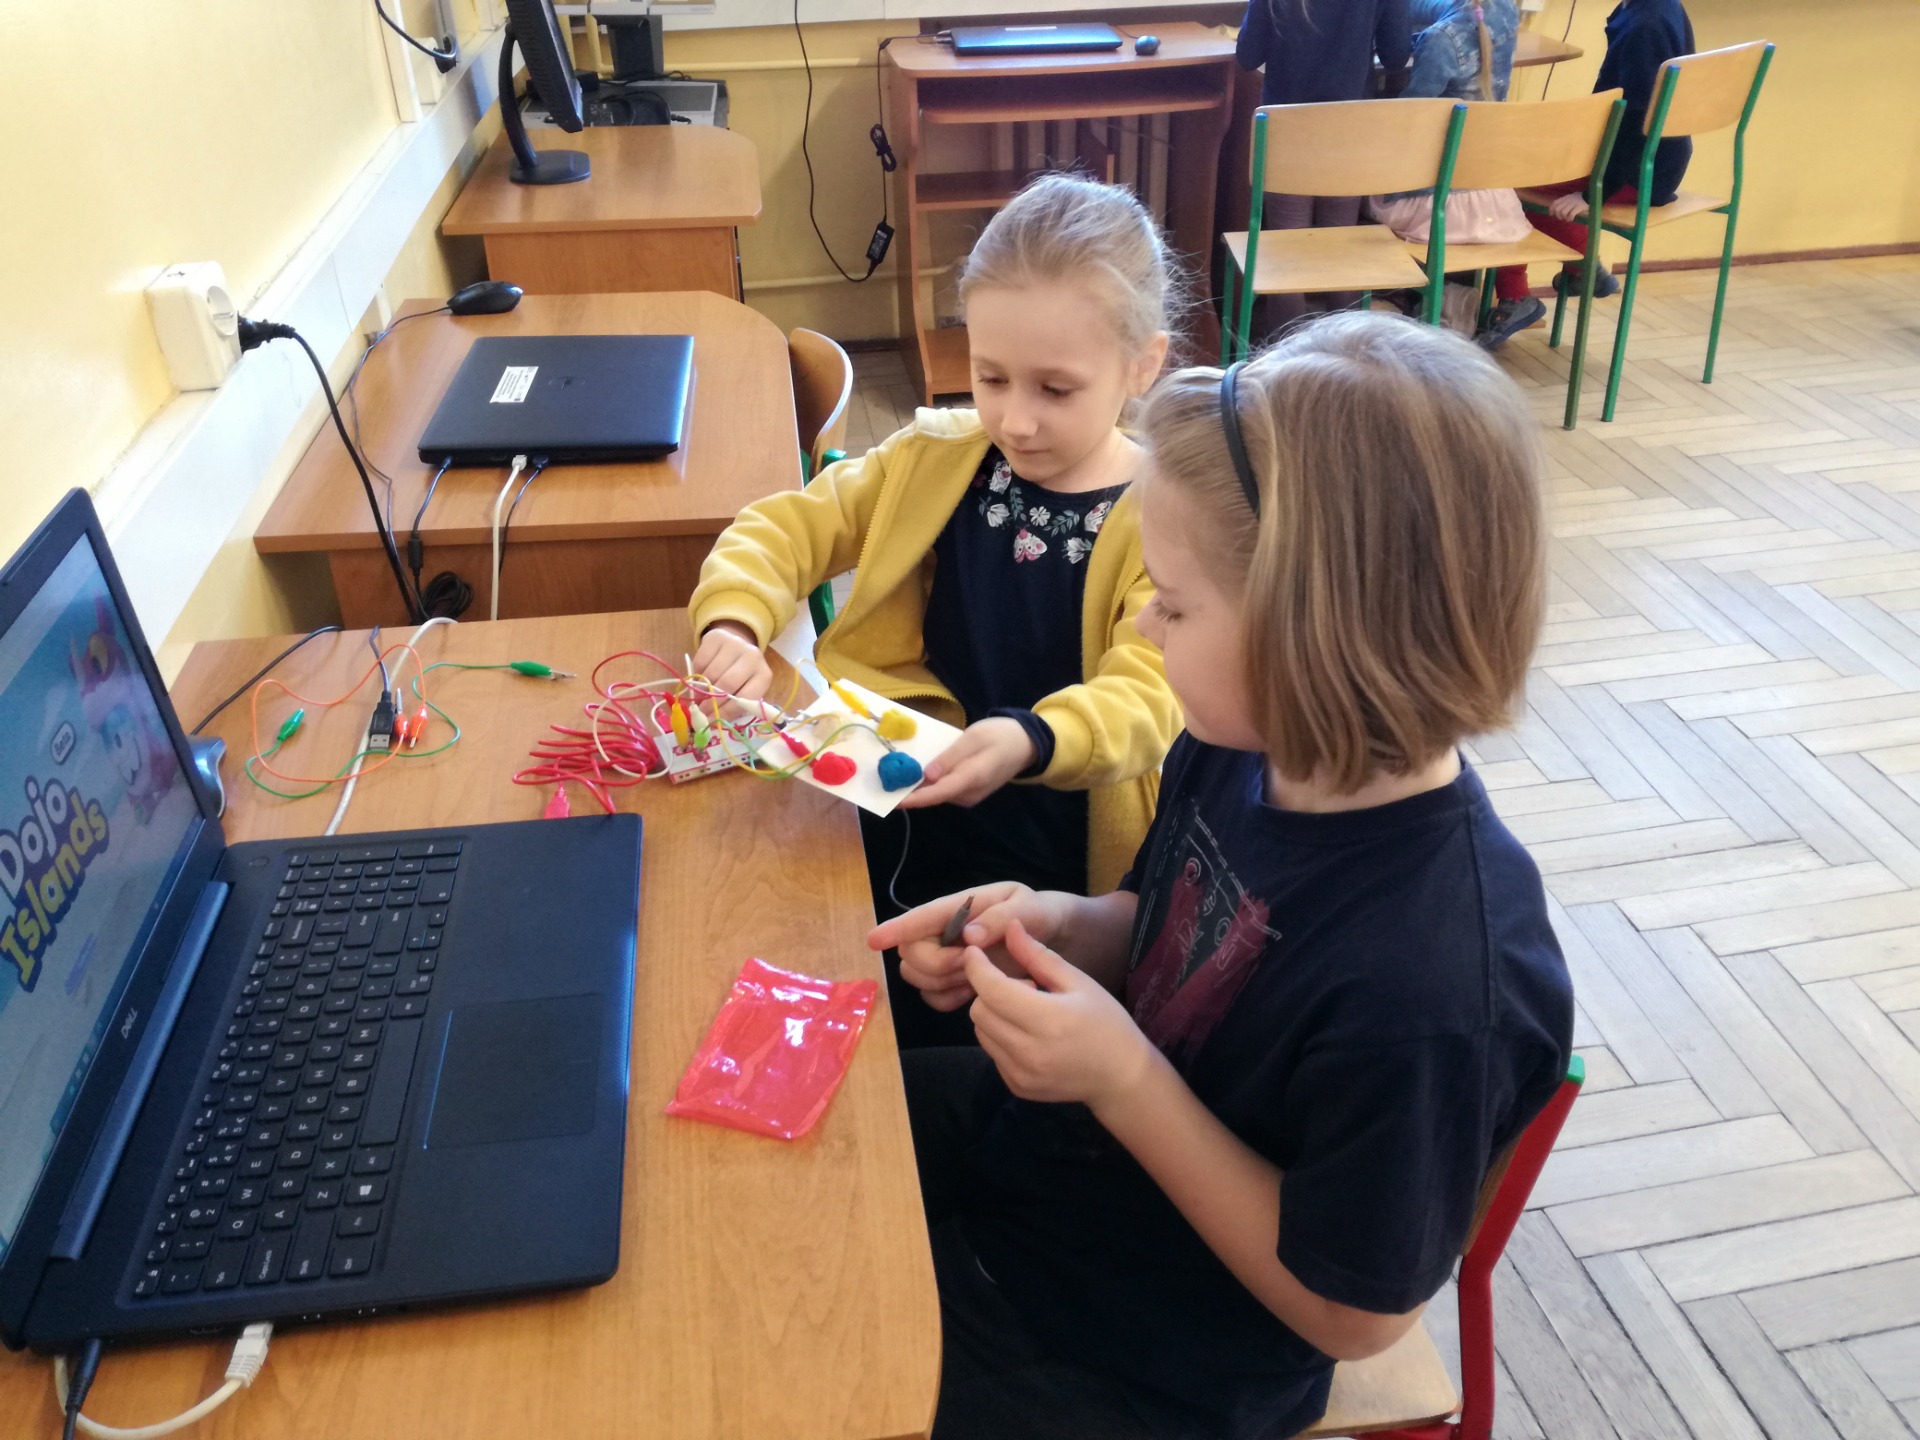 Uczniowie budują joystick z ciastoliny i podłączają go do płytki Makey Makey, a następnie używają joysticka zamiast strzałek i spacji do gry komputerowej